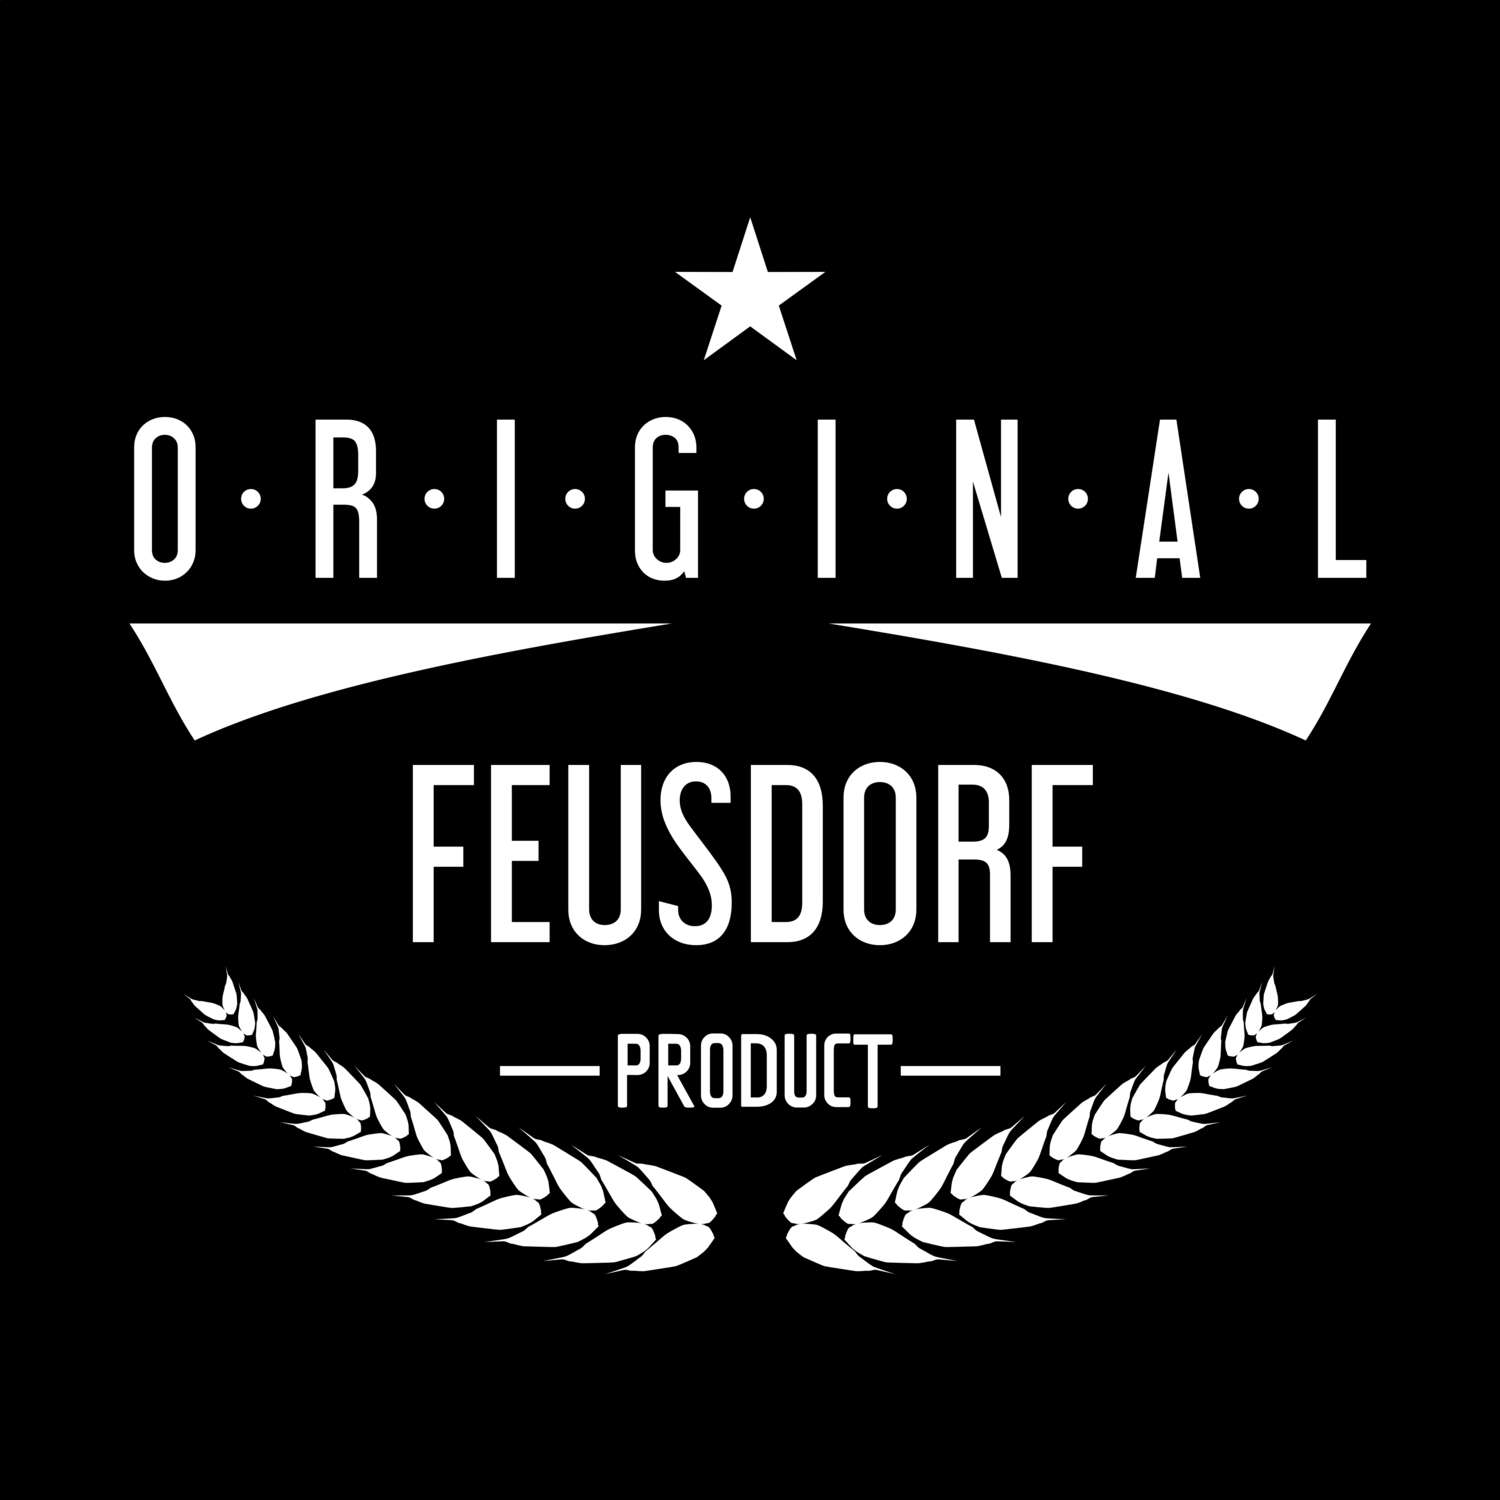 Feusdorf T-Shirt »Original Product«